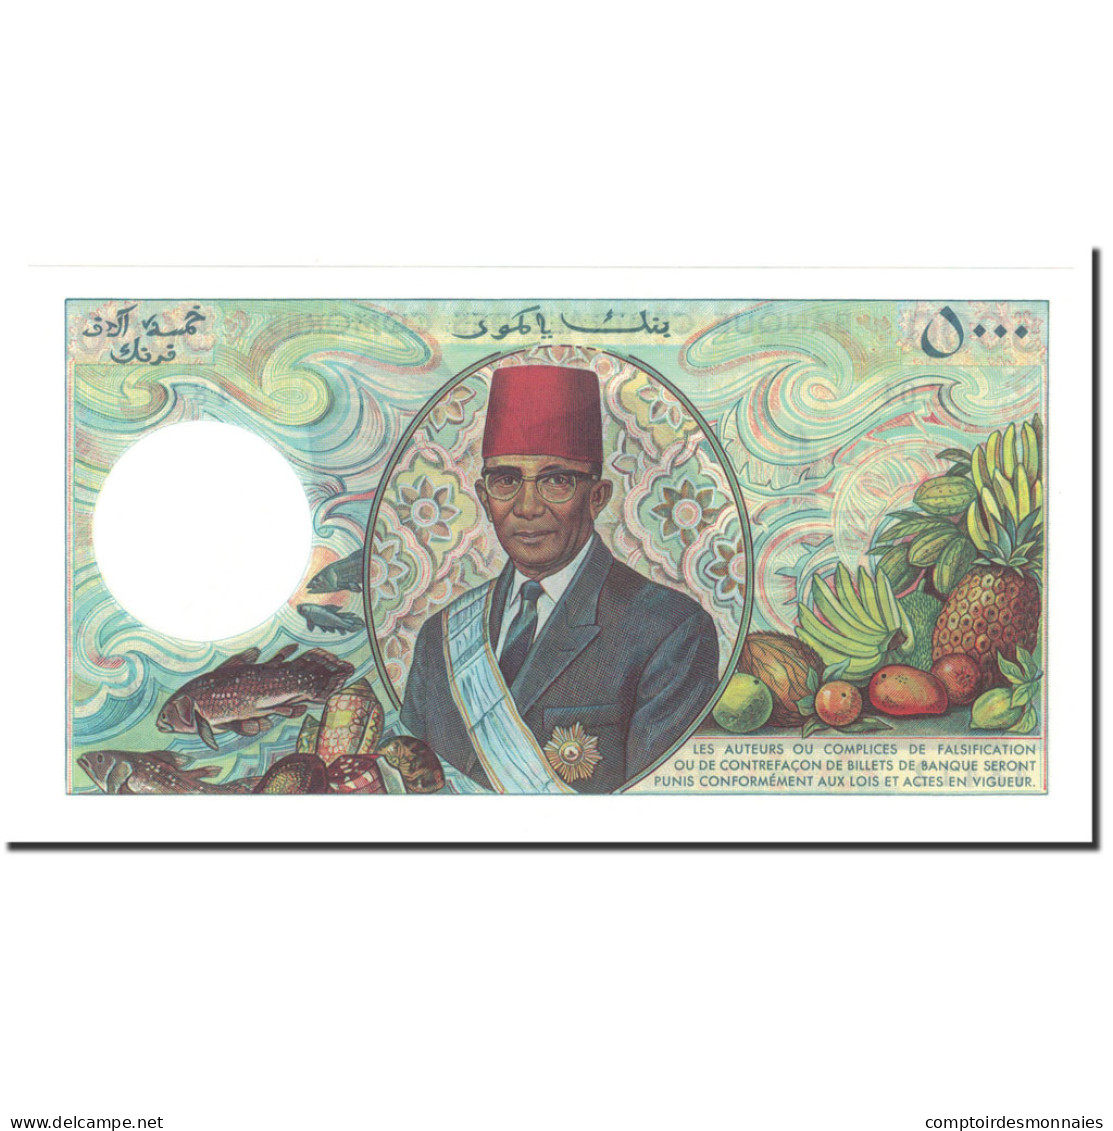 Billet, Comoros, 5000 Francs, 1984, KM:12b, NEUF - Comoren